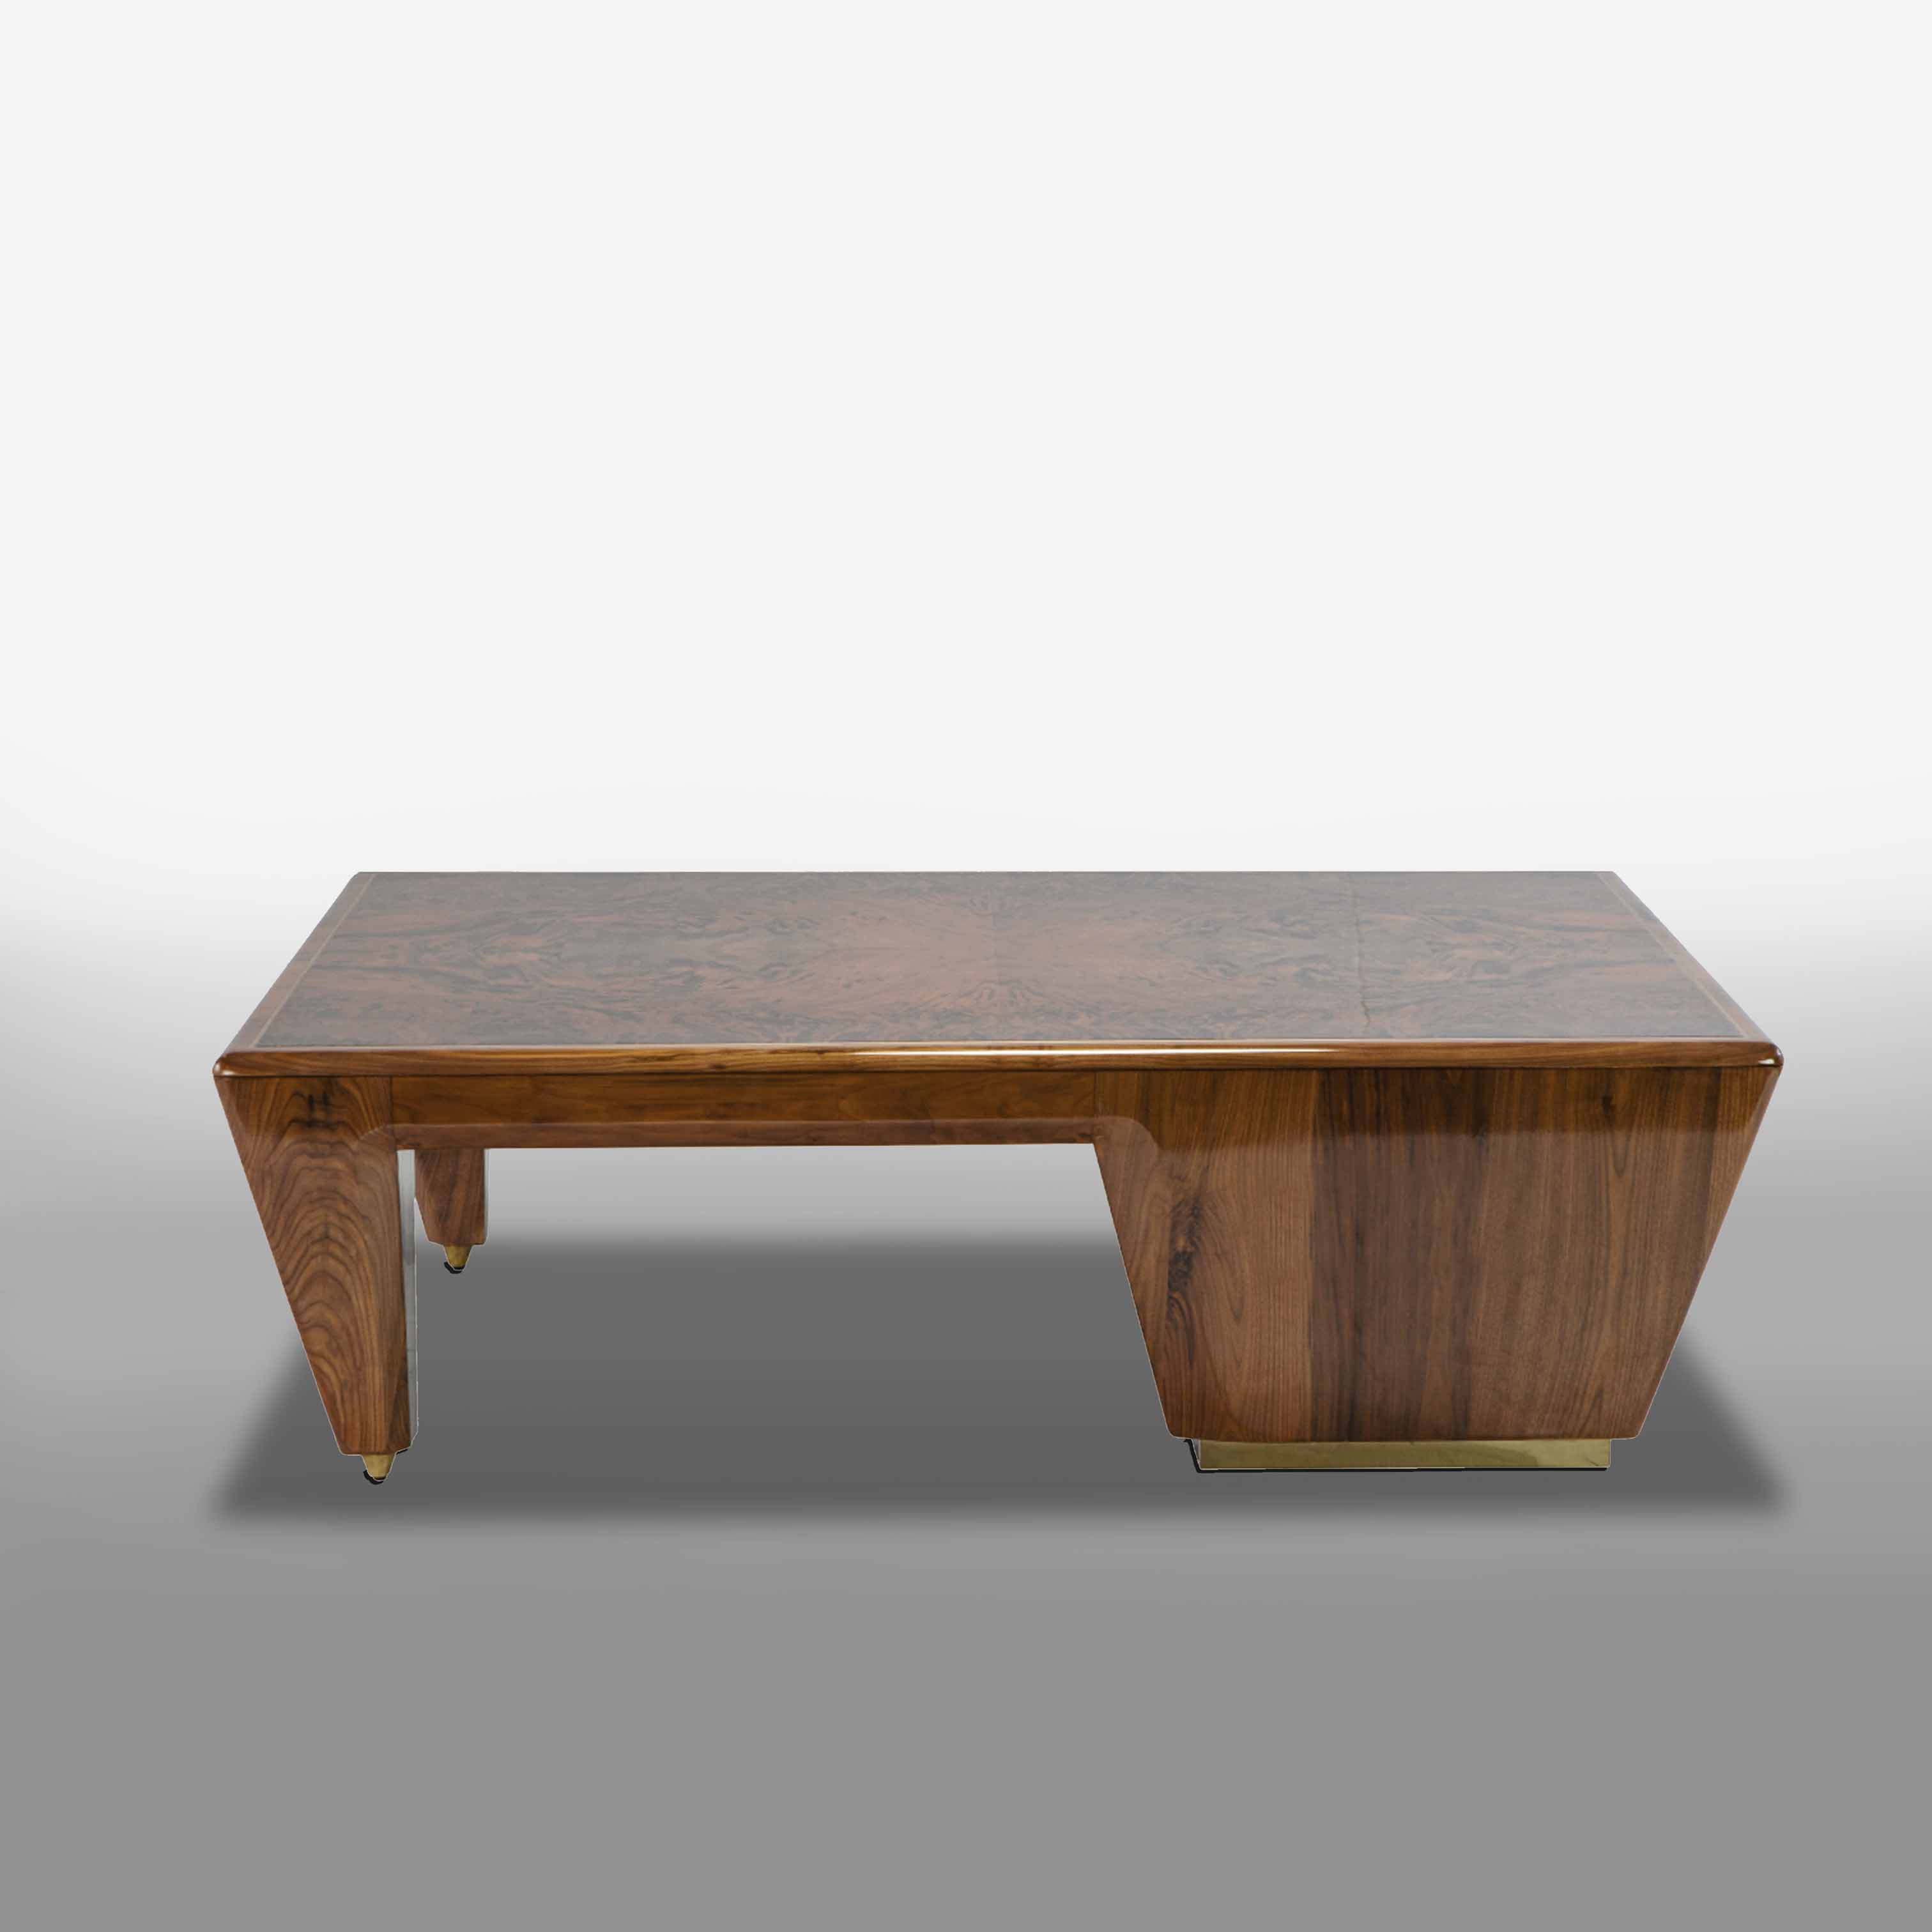 Mẫu bàn gỗ đẹp dành cho phòng khách thịnh hành hiện nay 1